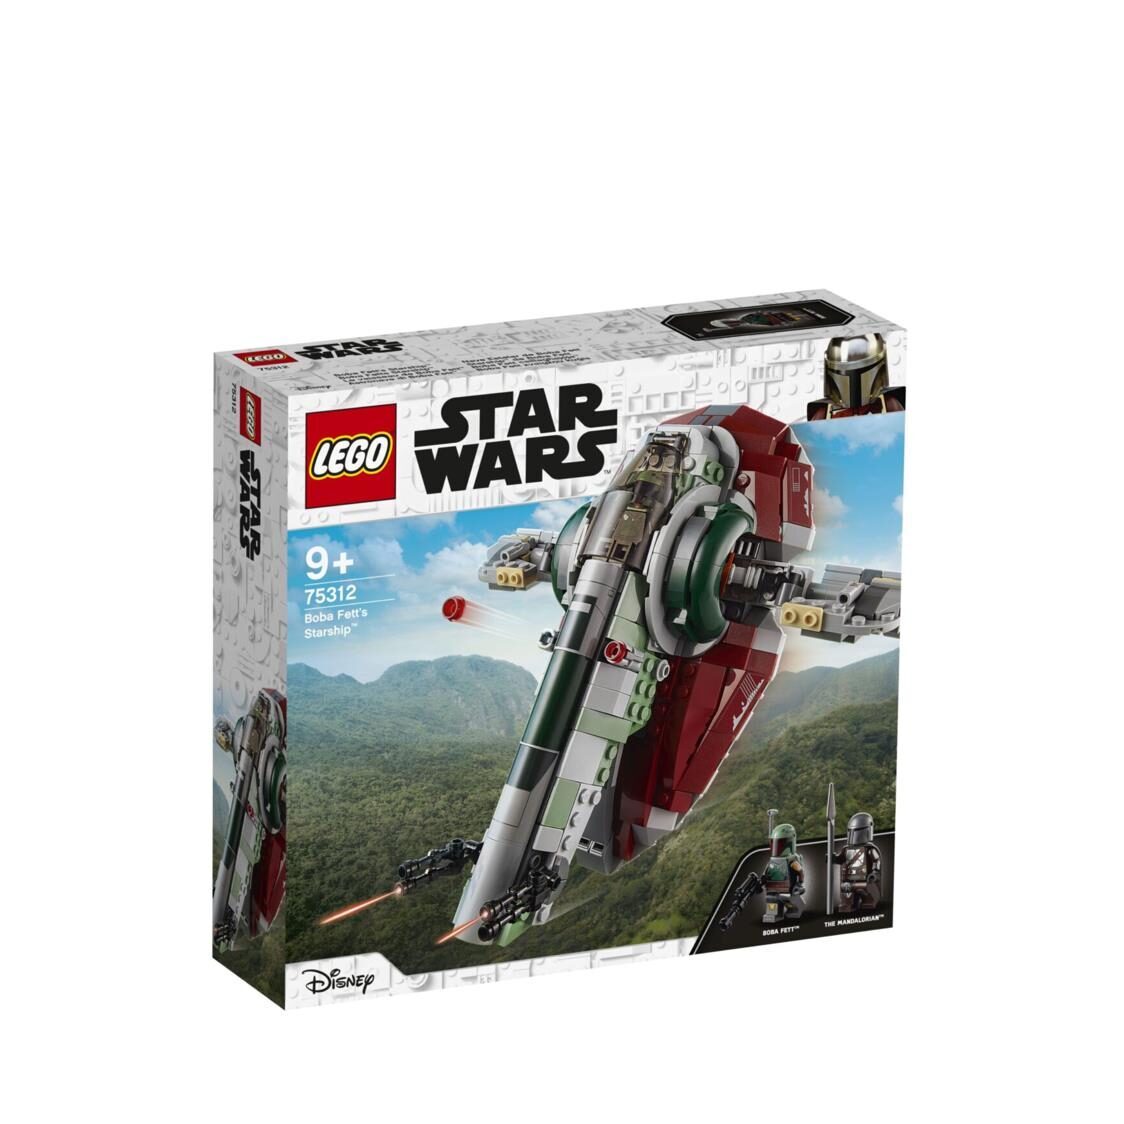 LEGO Star Wars -  Boba Fetts Starship 75312